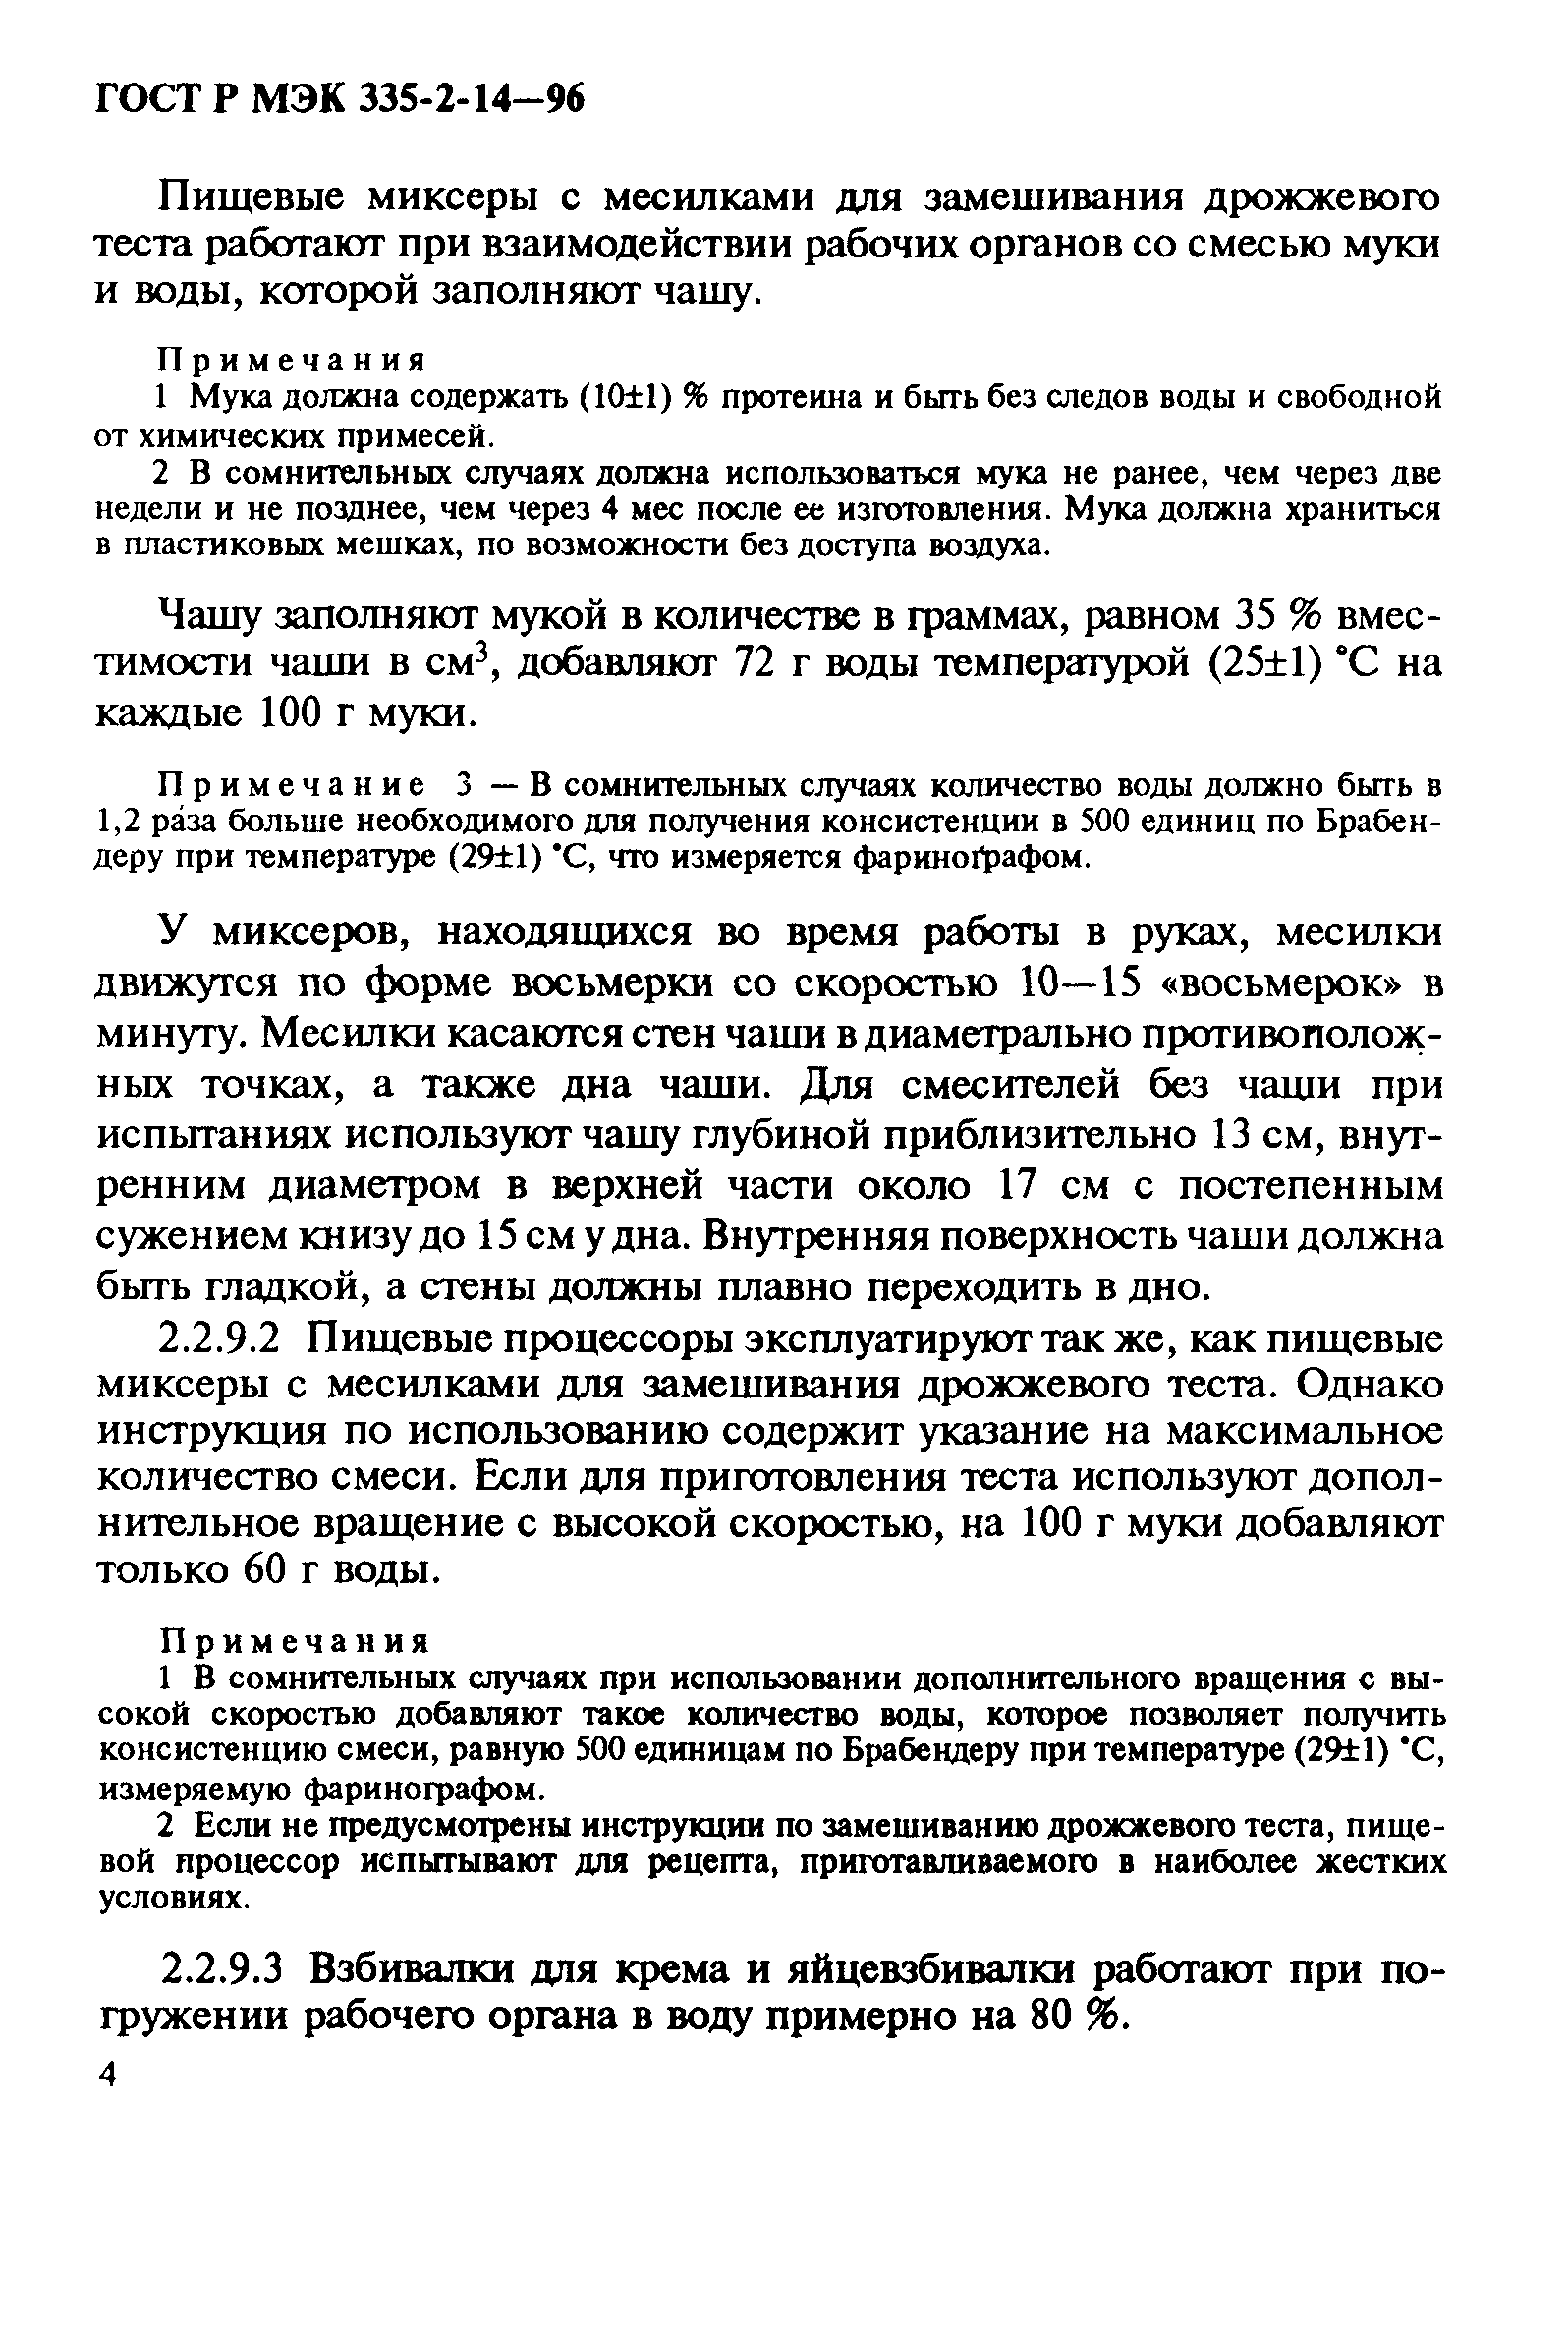 ГОСТ Р МЭК 335-2-14-96